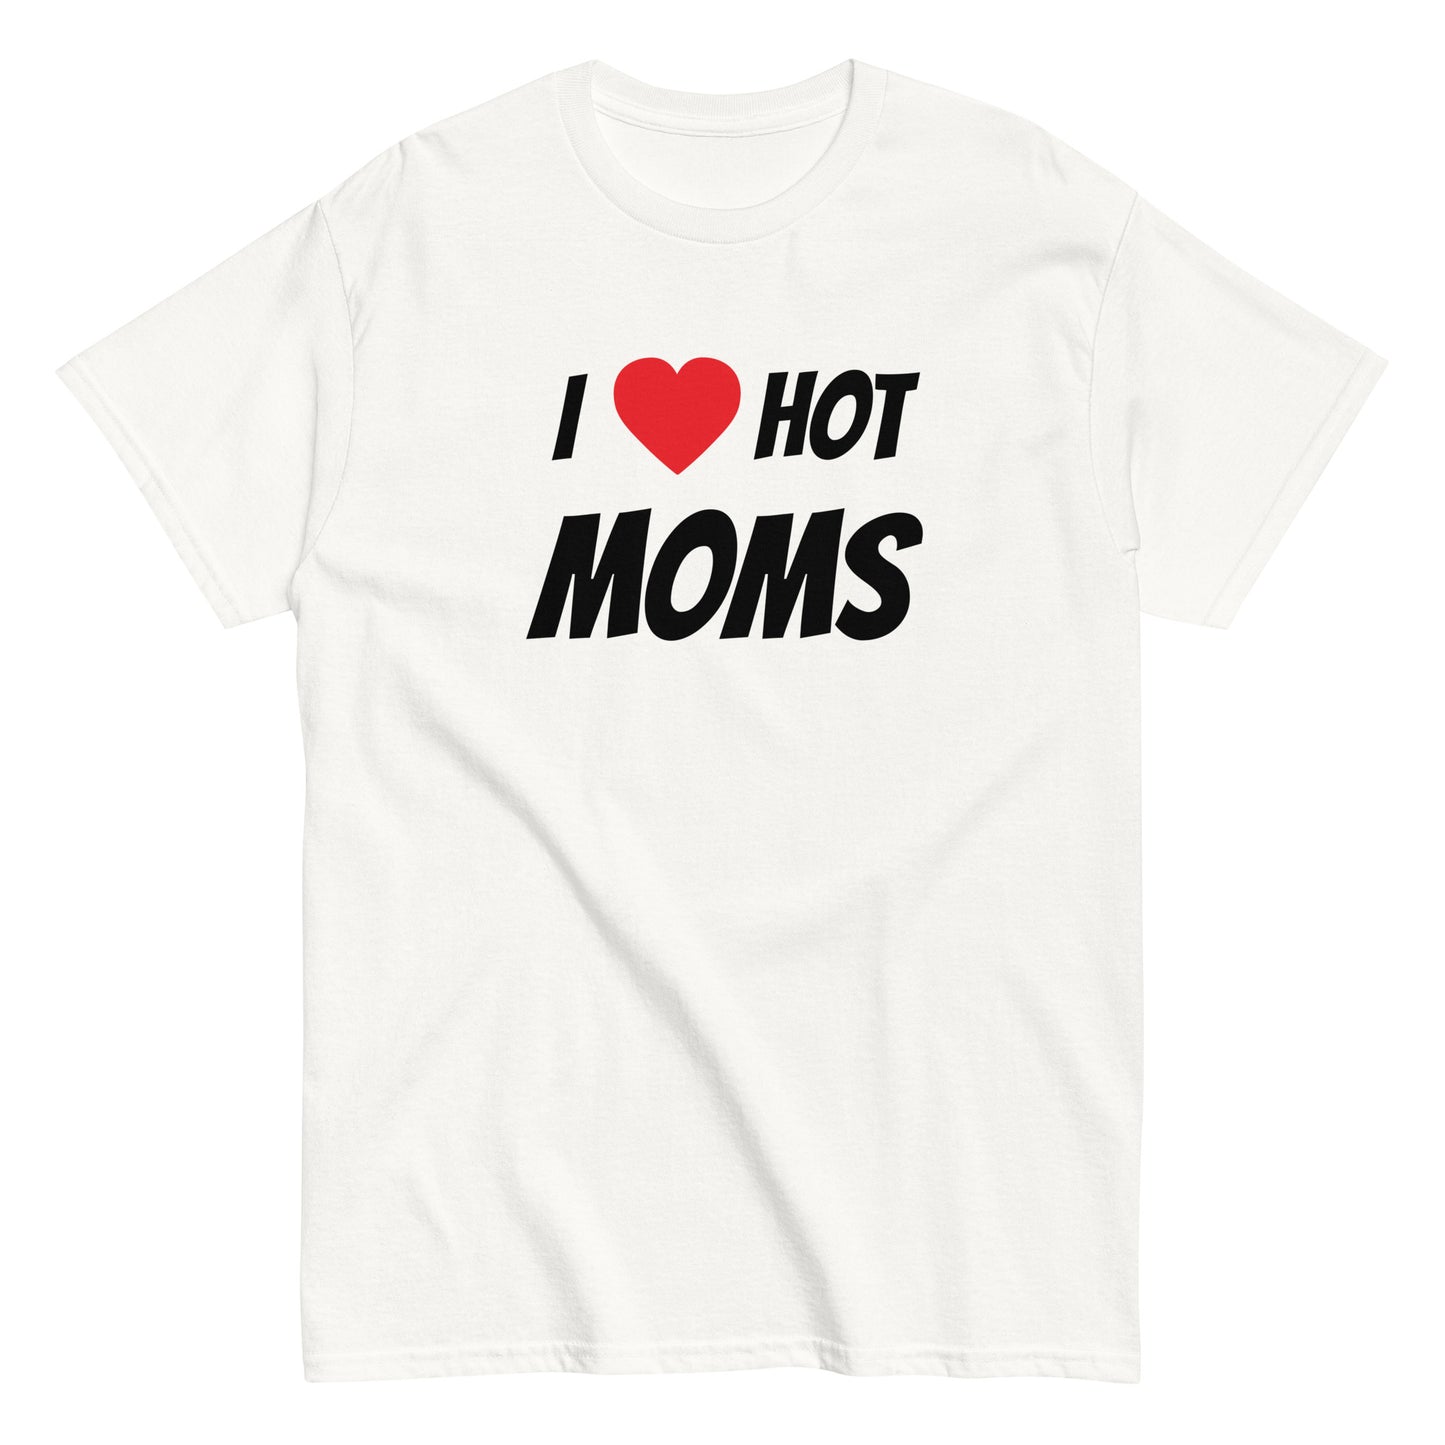 I ❤️ HOT MOMS T-Shirt